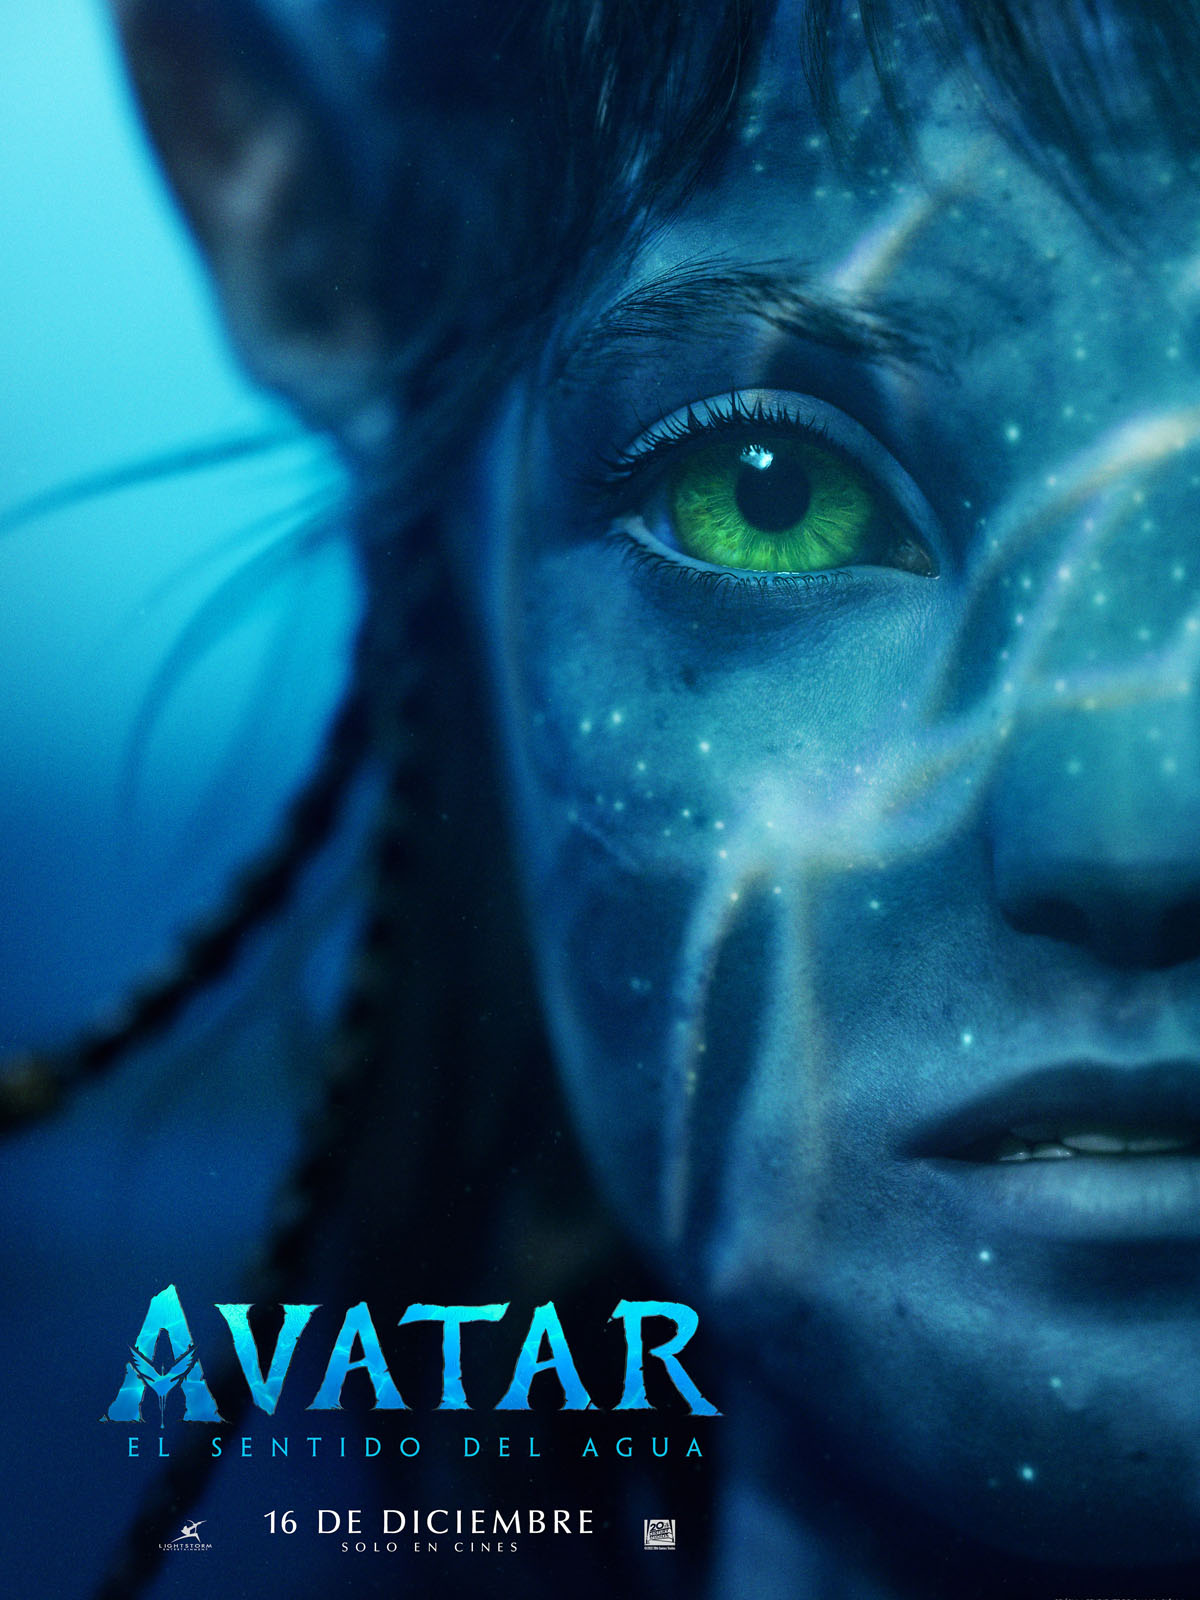 Avatar 2 rompe récords con sus escenas debajo del agua